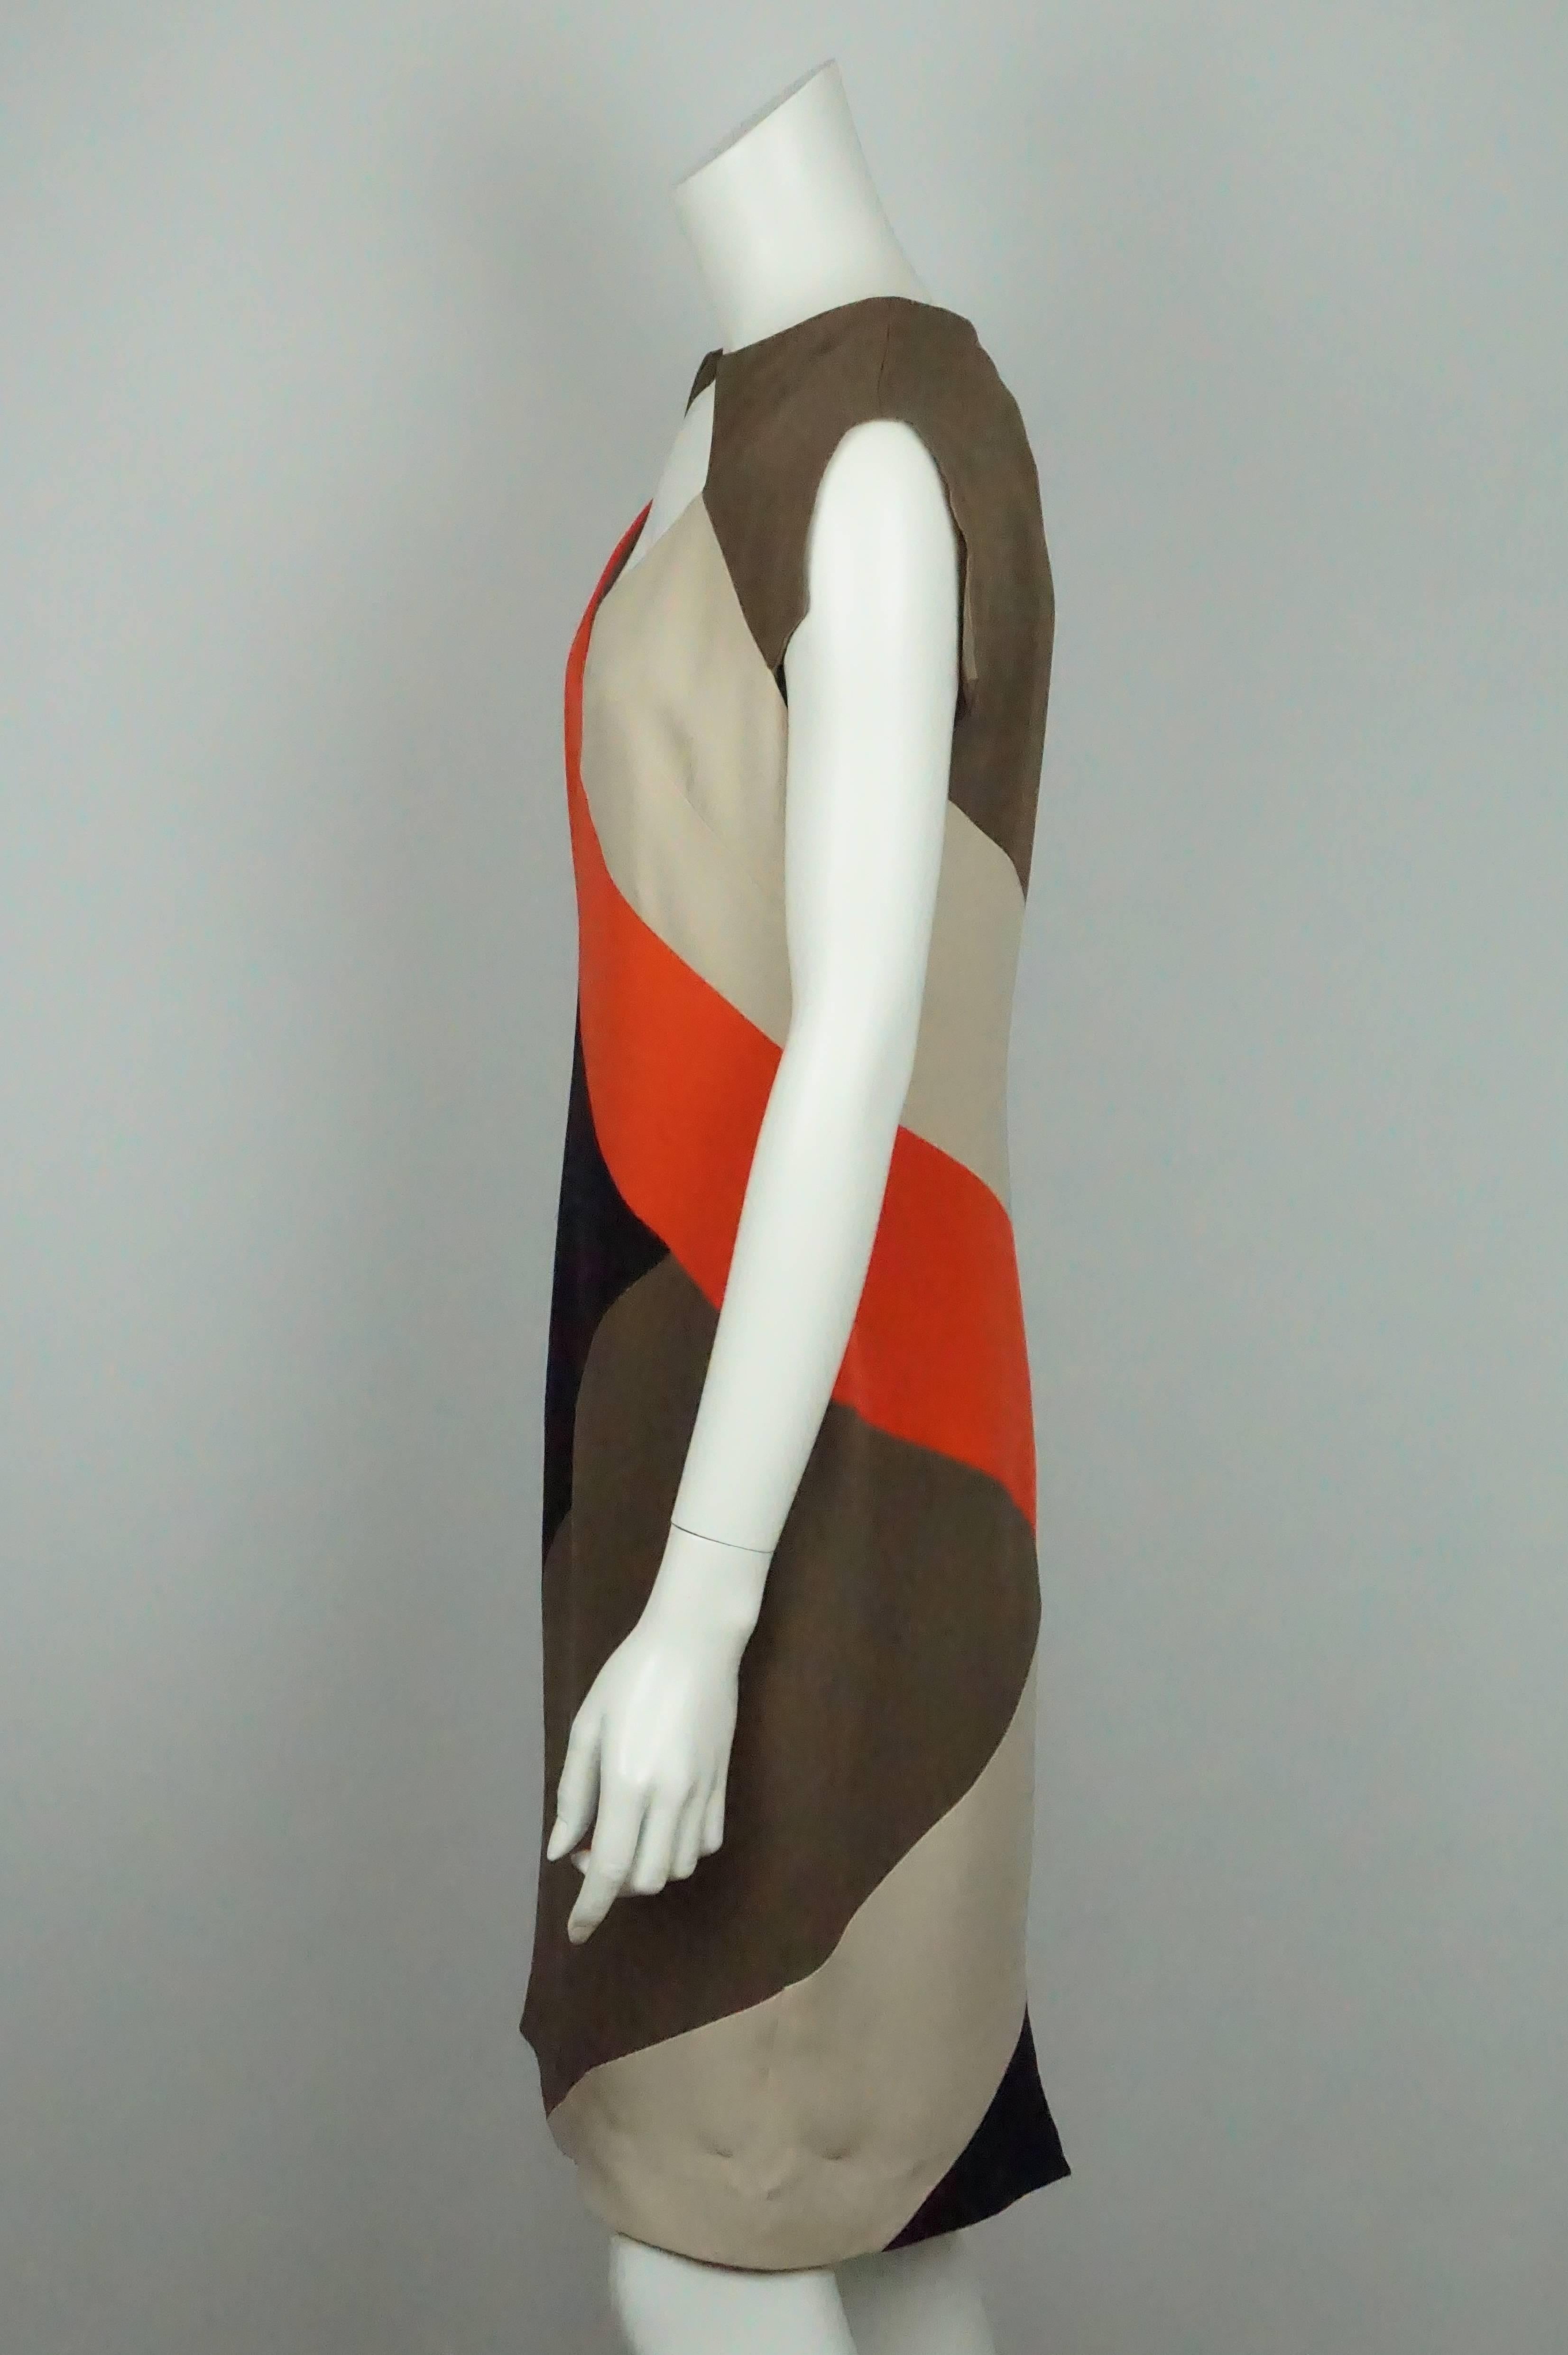 Lela Rose Braun/Orange/Beige S/S Seidenkleid - 8  Dieses schöne Kleid ist in gutem Zustand. Das Kleid ist mit einem geometrischen Muster versehen, das braune, orange und beige Farben enthält. Es ist vollständig mit Seide gefüttert. In der hinteren